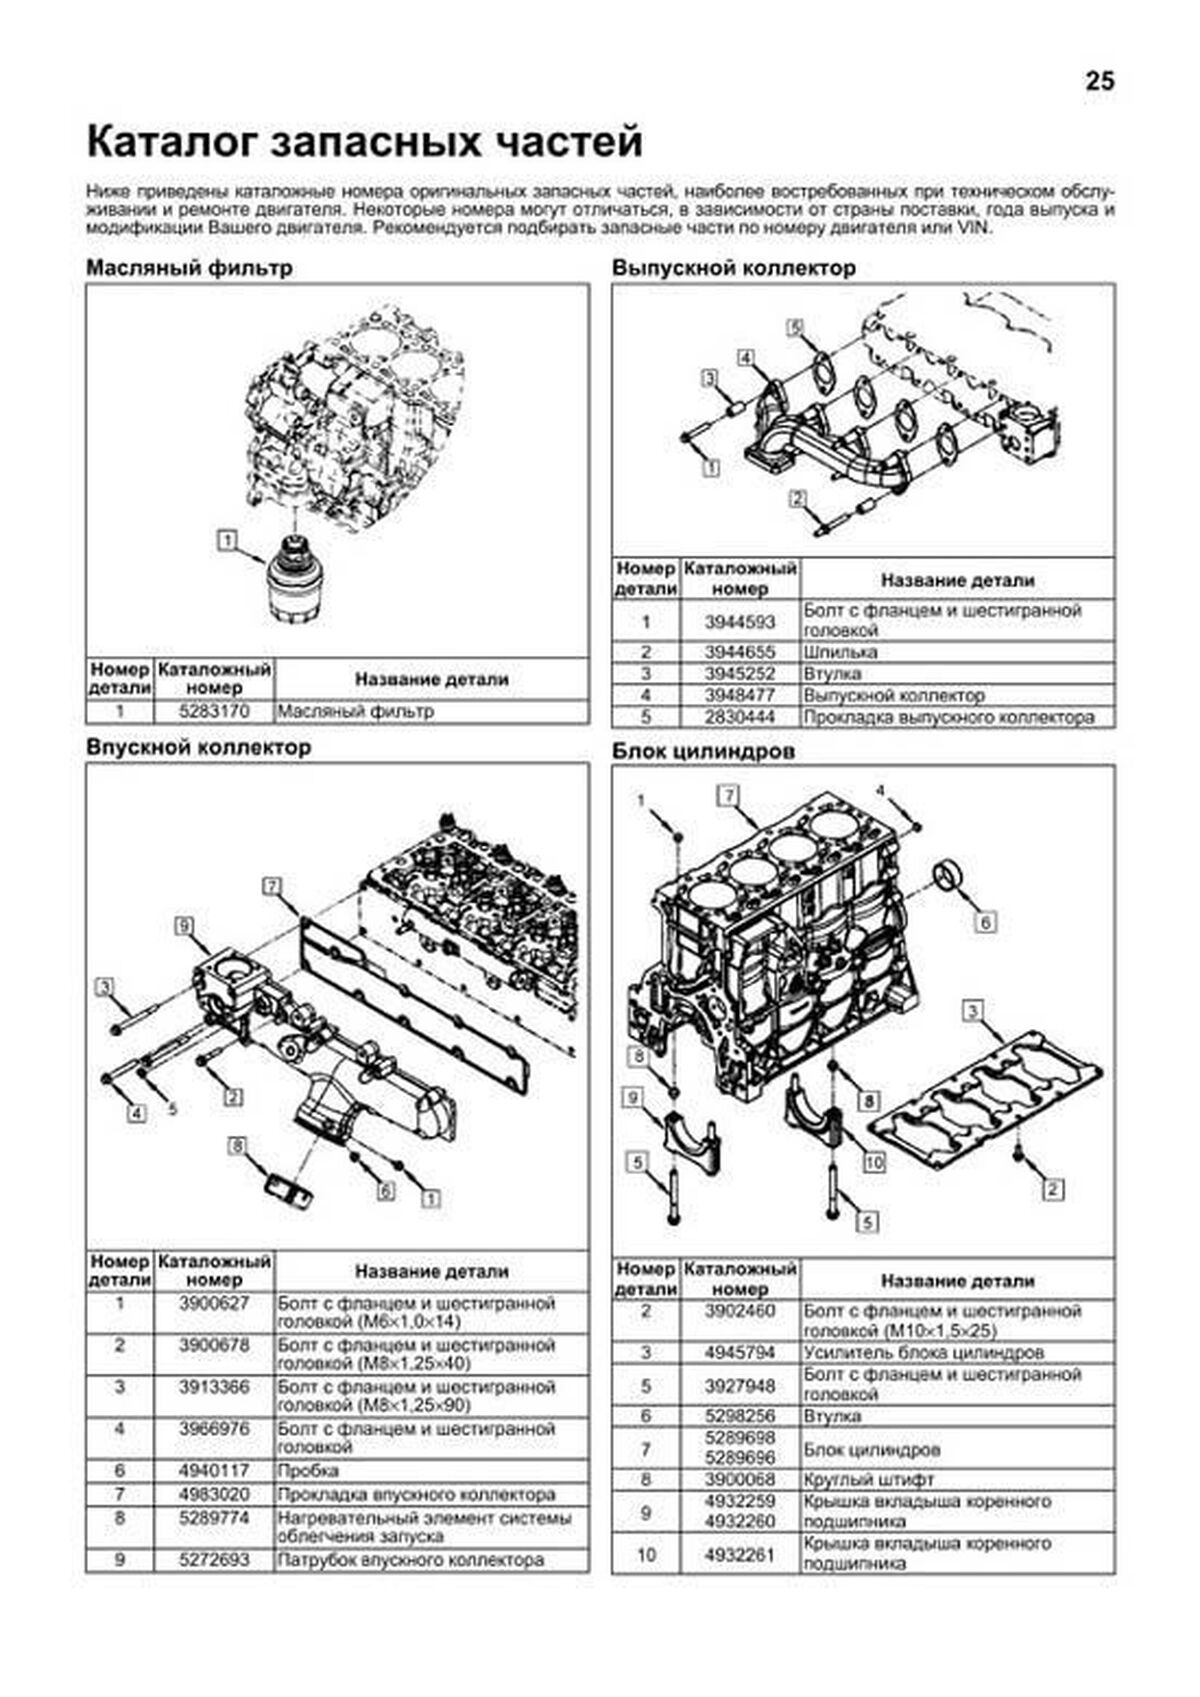 Книга: Двигатели CUMMINS ISF3_8 (д) рем., экспл., то, сер.ПРОФ. | Легион-Aвтодата